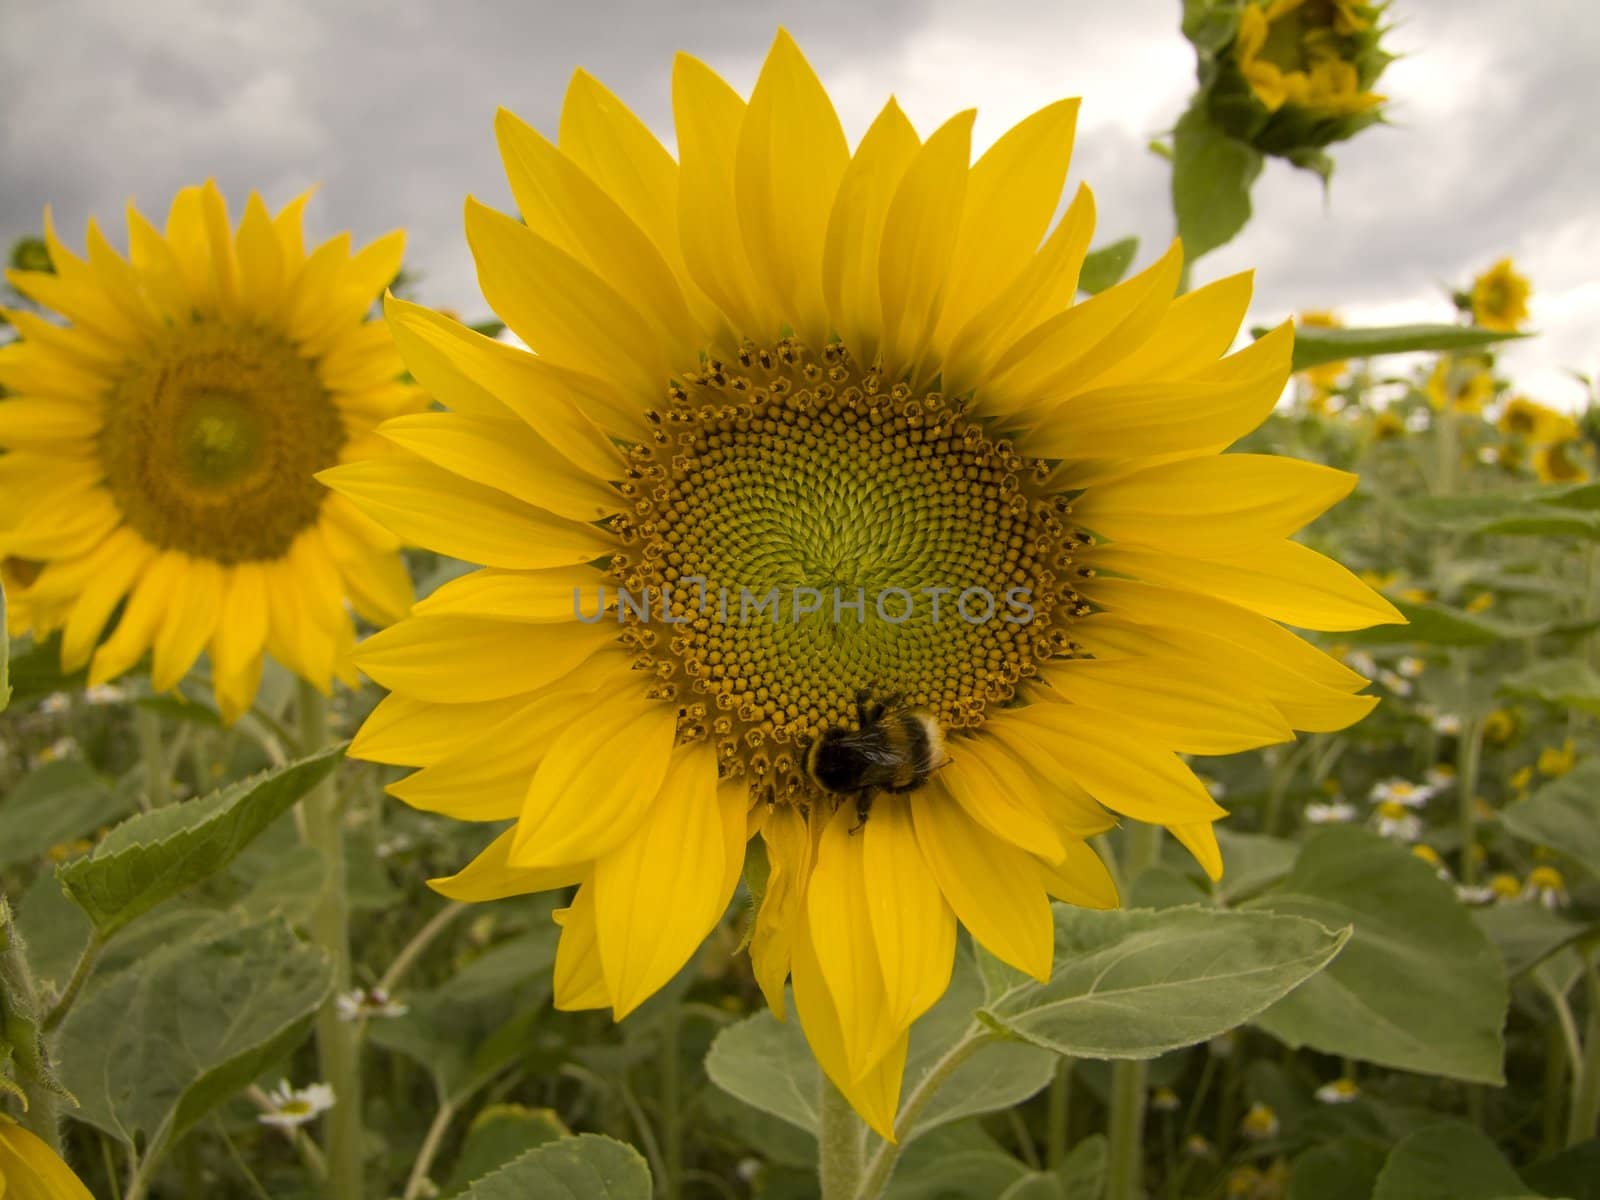 Sunflower - grown on a field